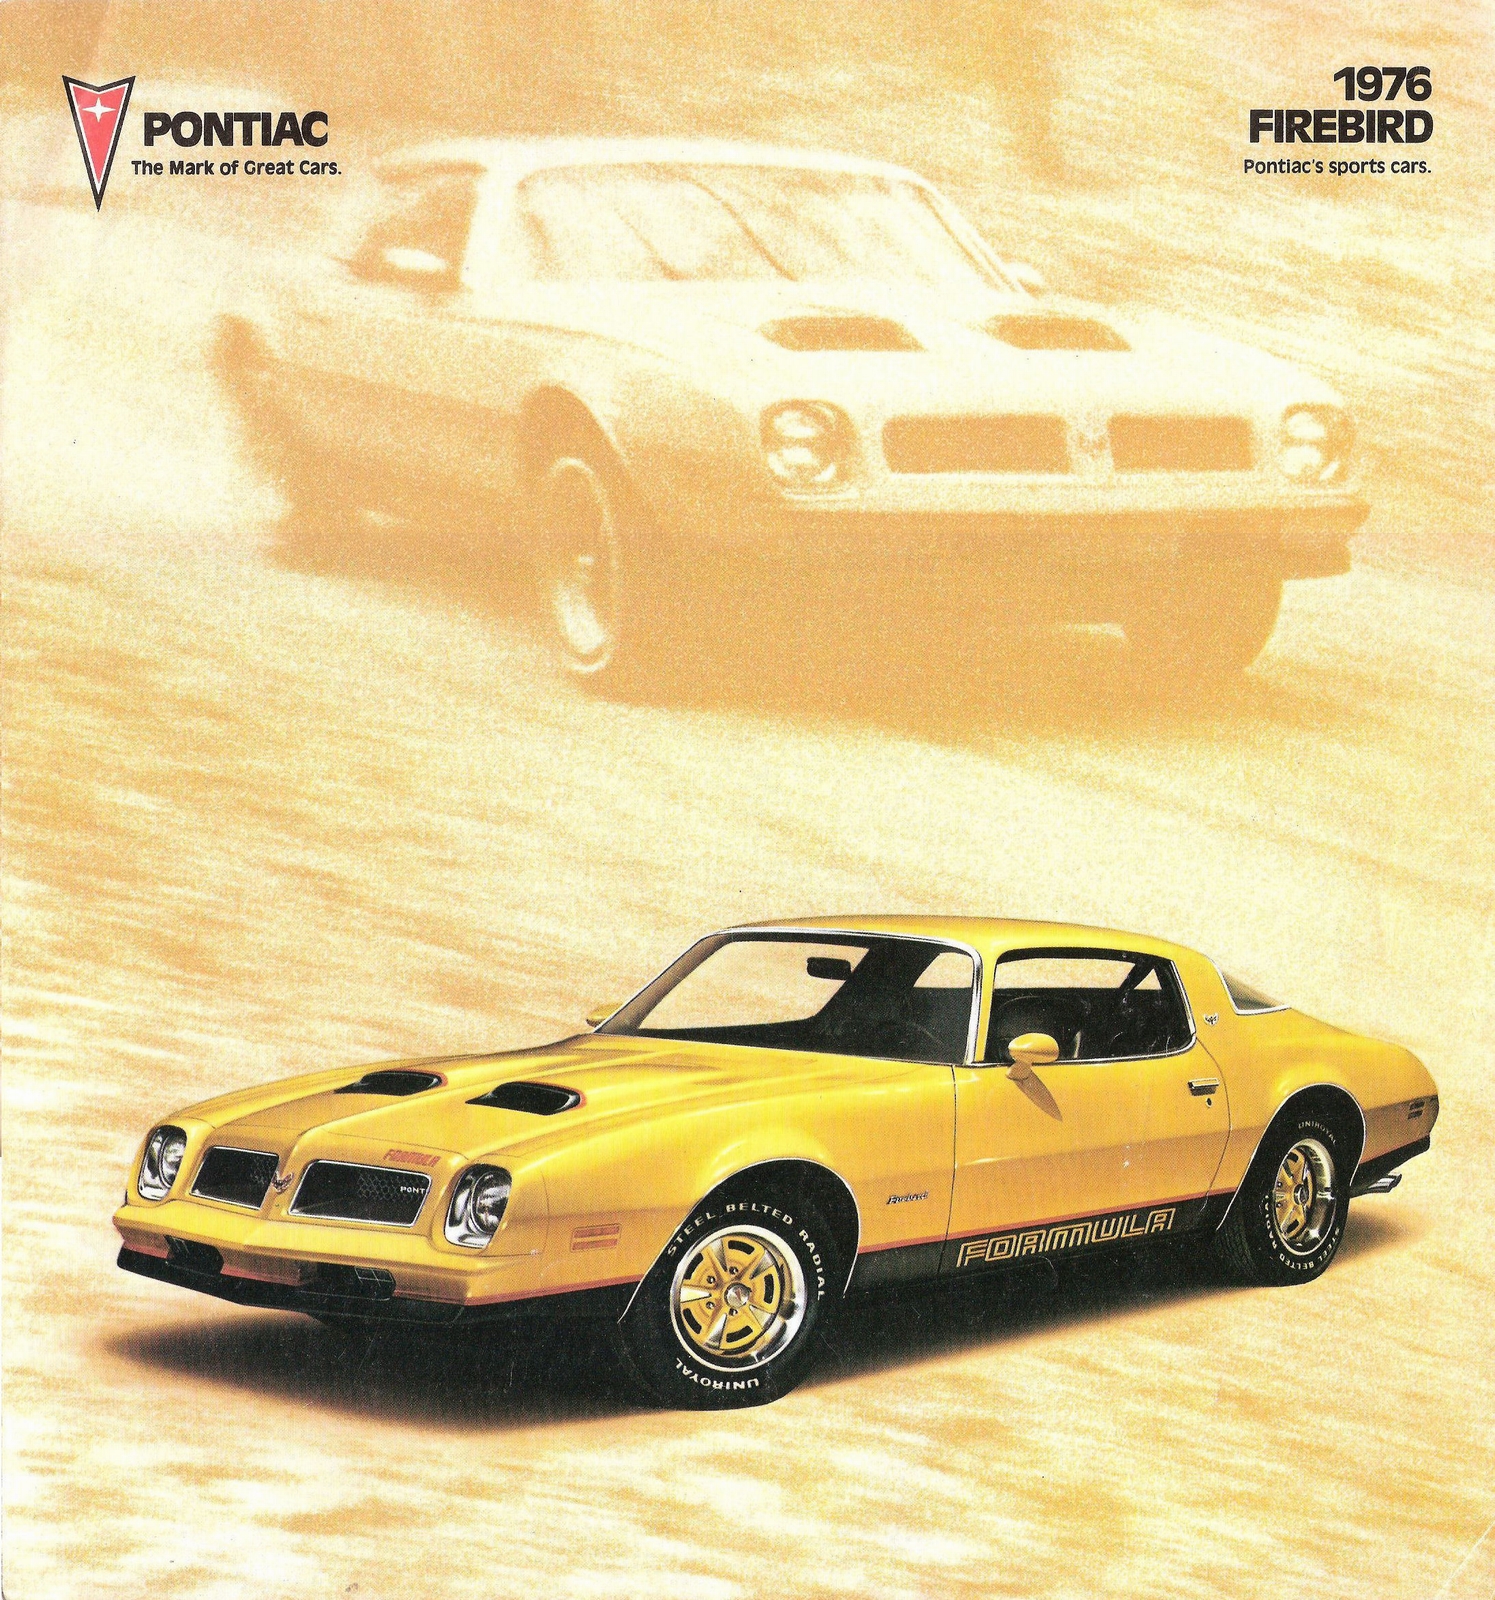 n_1976 Pontiac Firebird-01.jpg